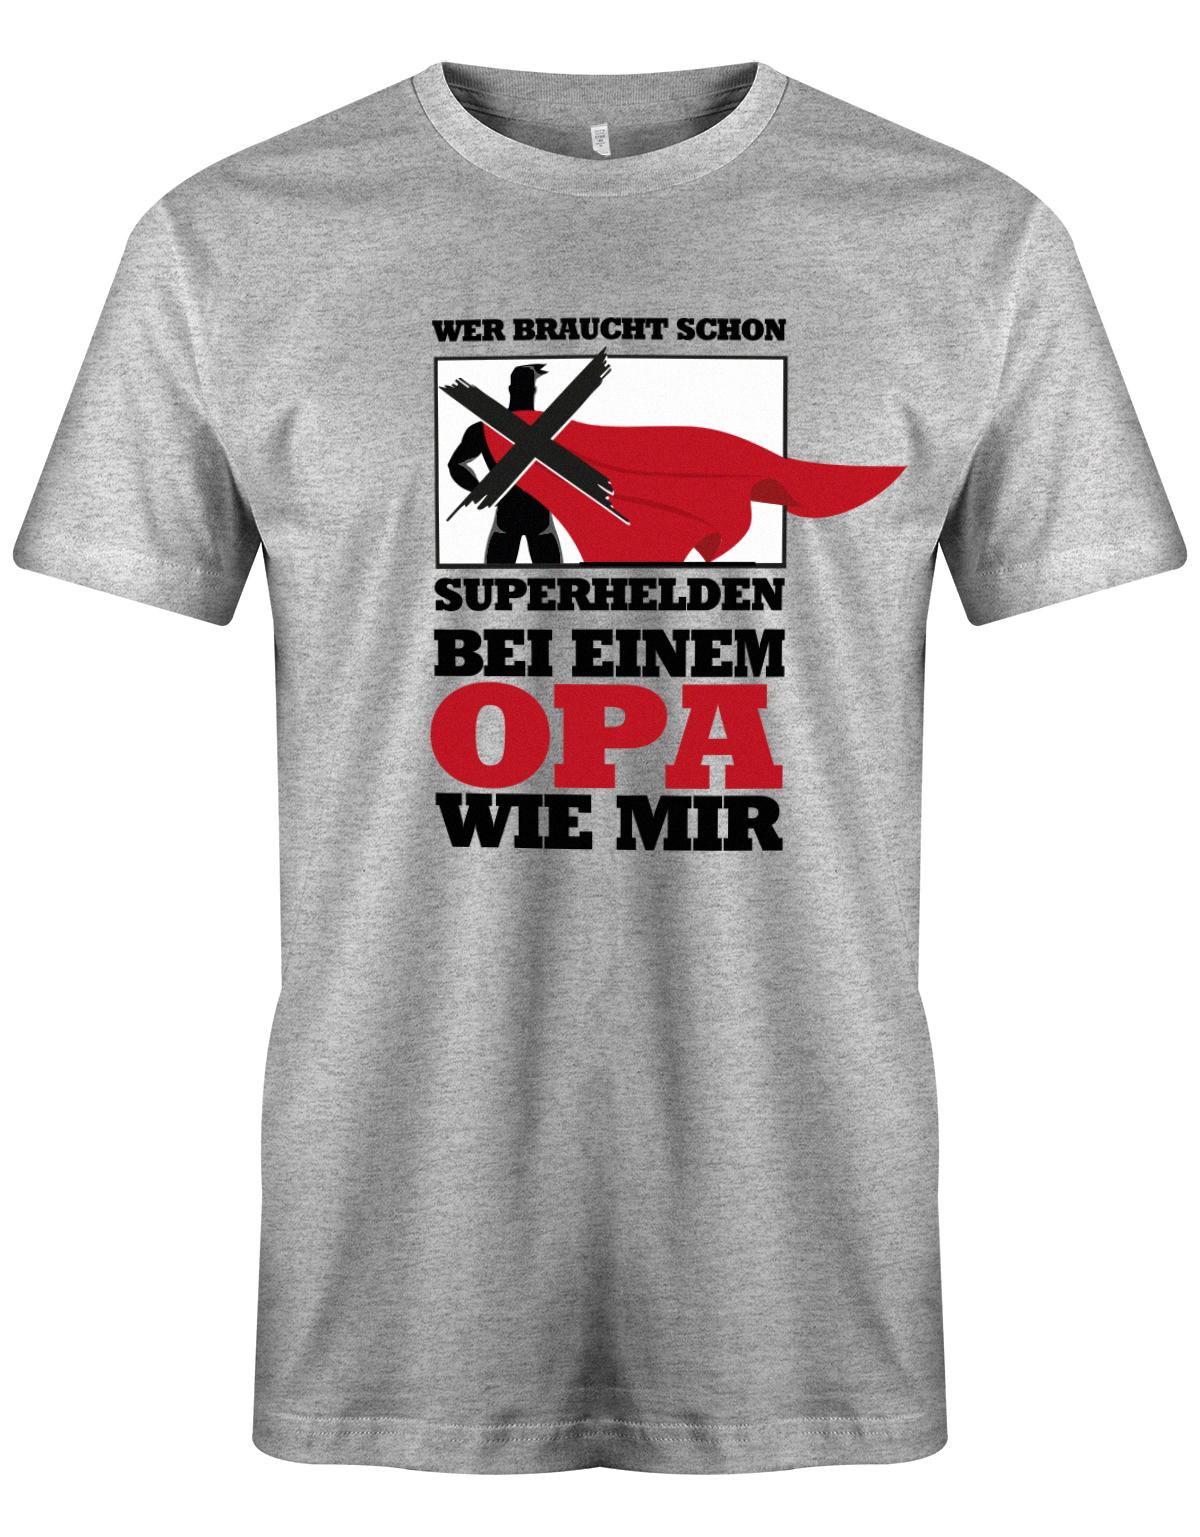 Opa T-Shirt – Wer braucht schon Superhelden bei einem Opa wie mir Grauu